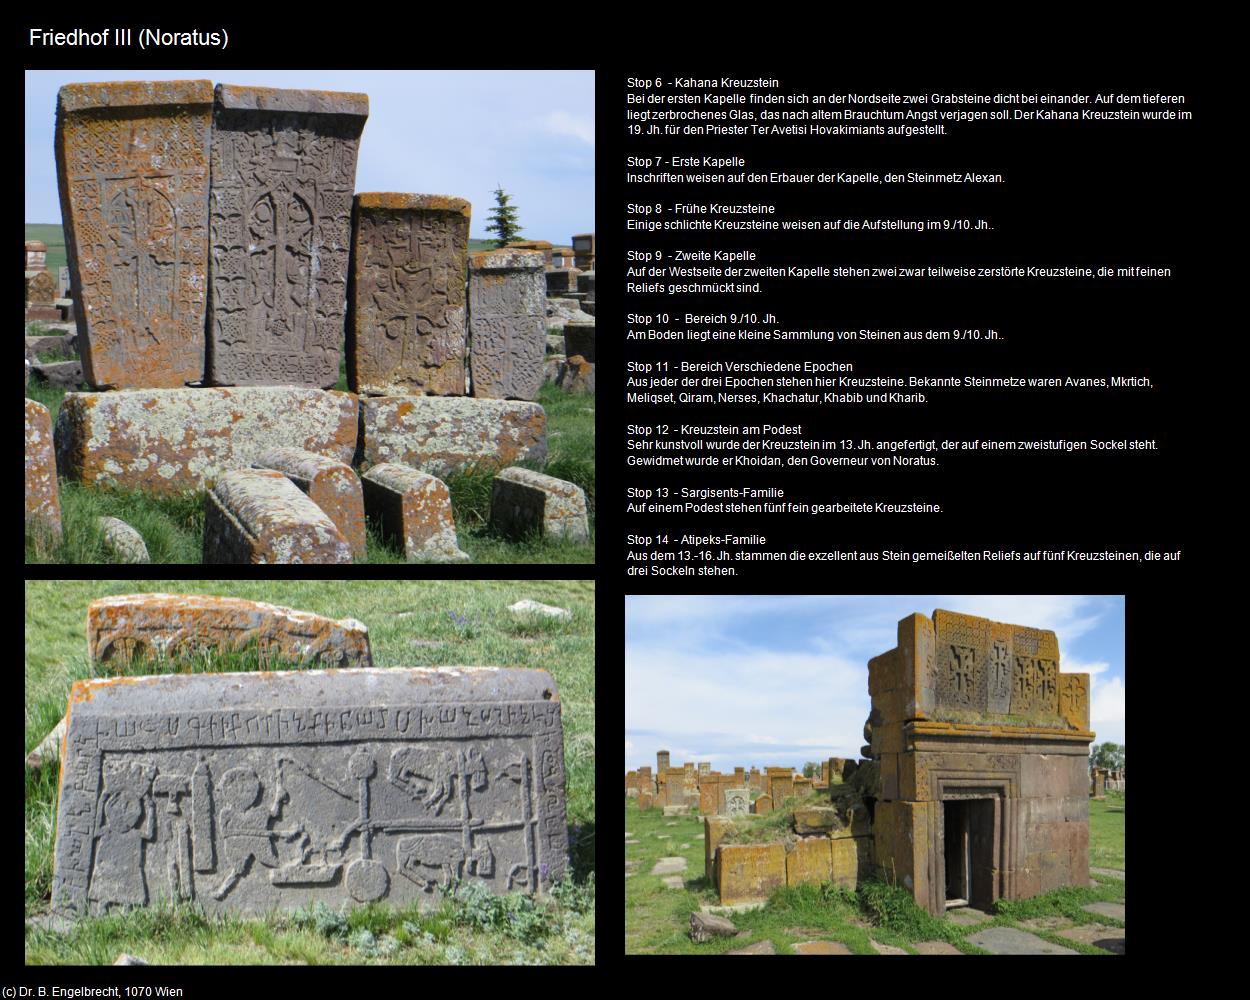 Friedhof III (Noratus) in Kulturatlas-ARMENIEN